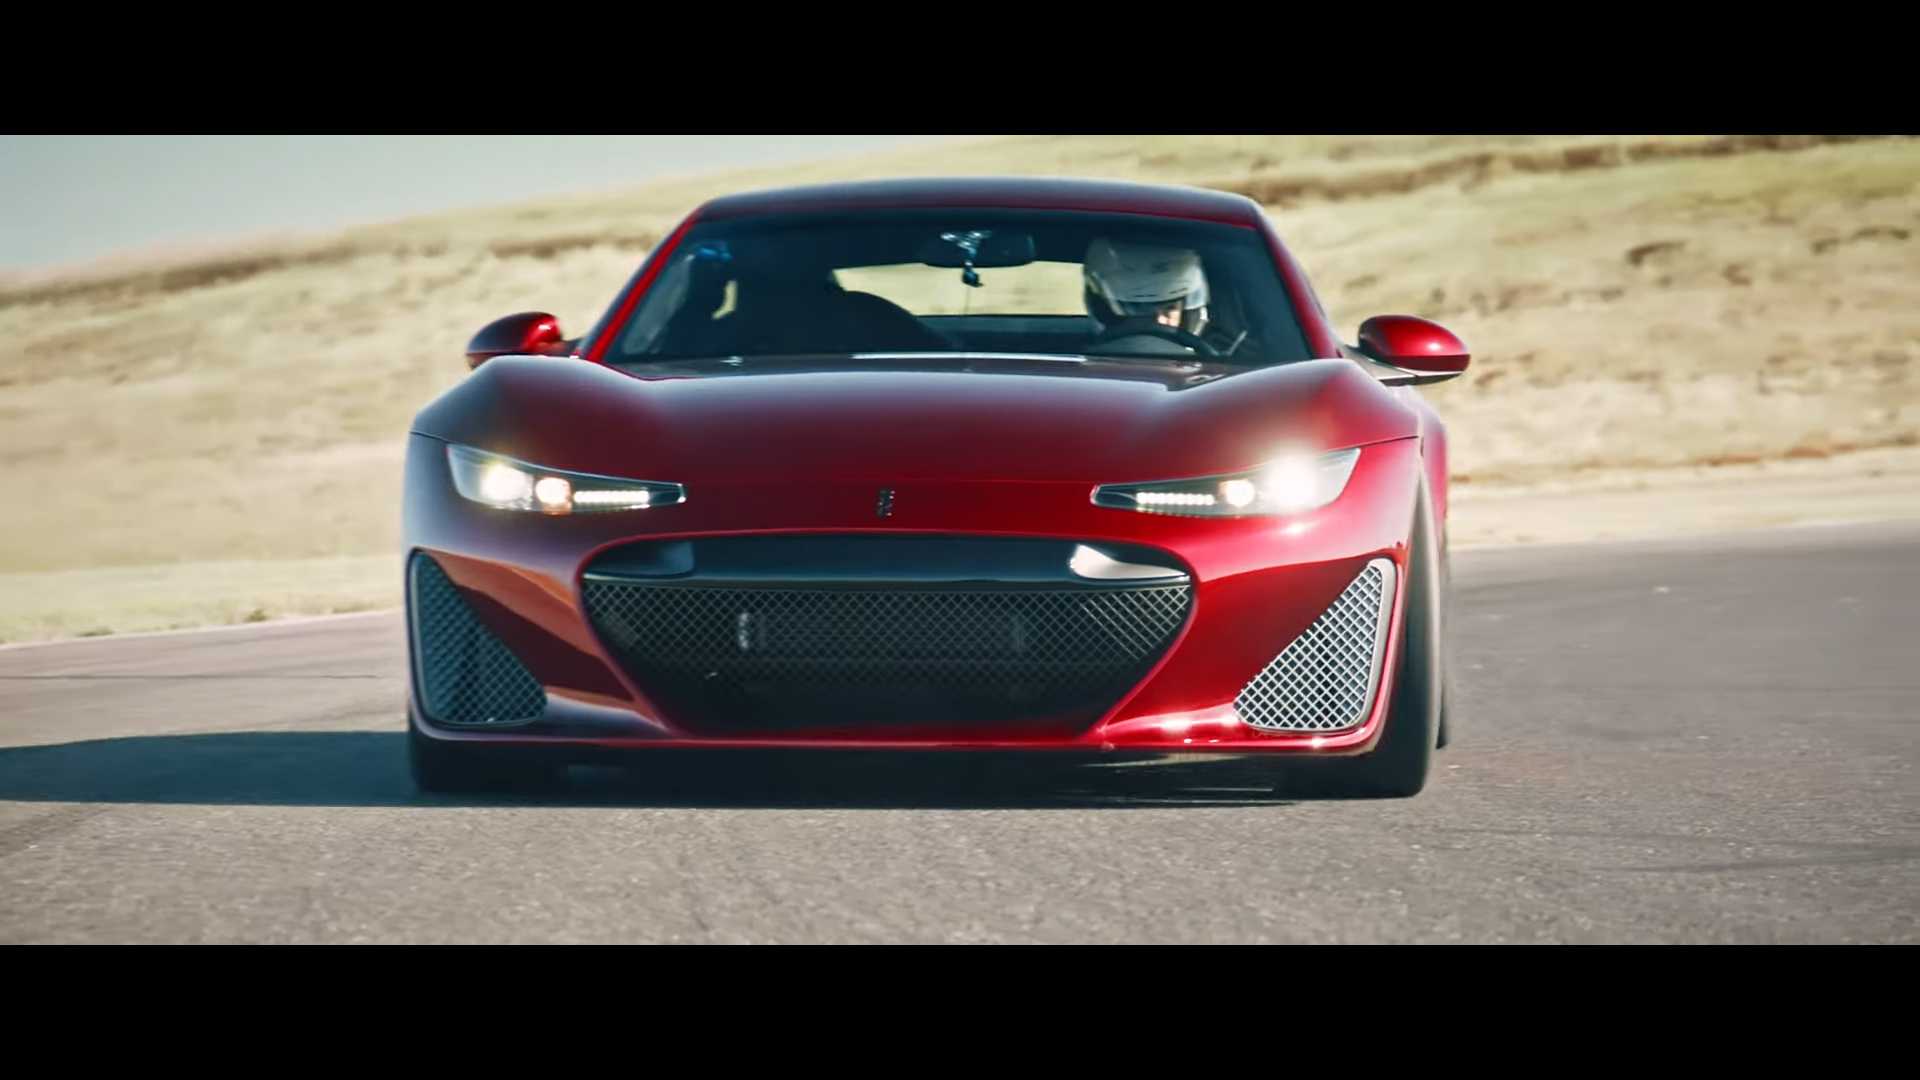 2020 Drako GTE “Şimdiye Kadar Yapılan En Güçlü GT Araba”